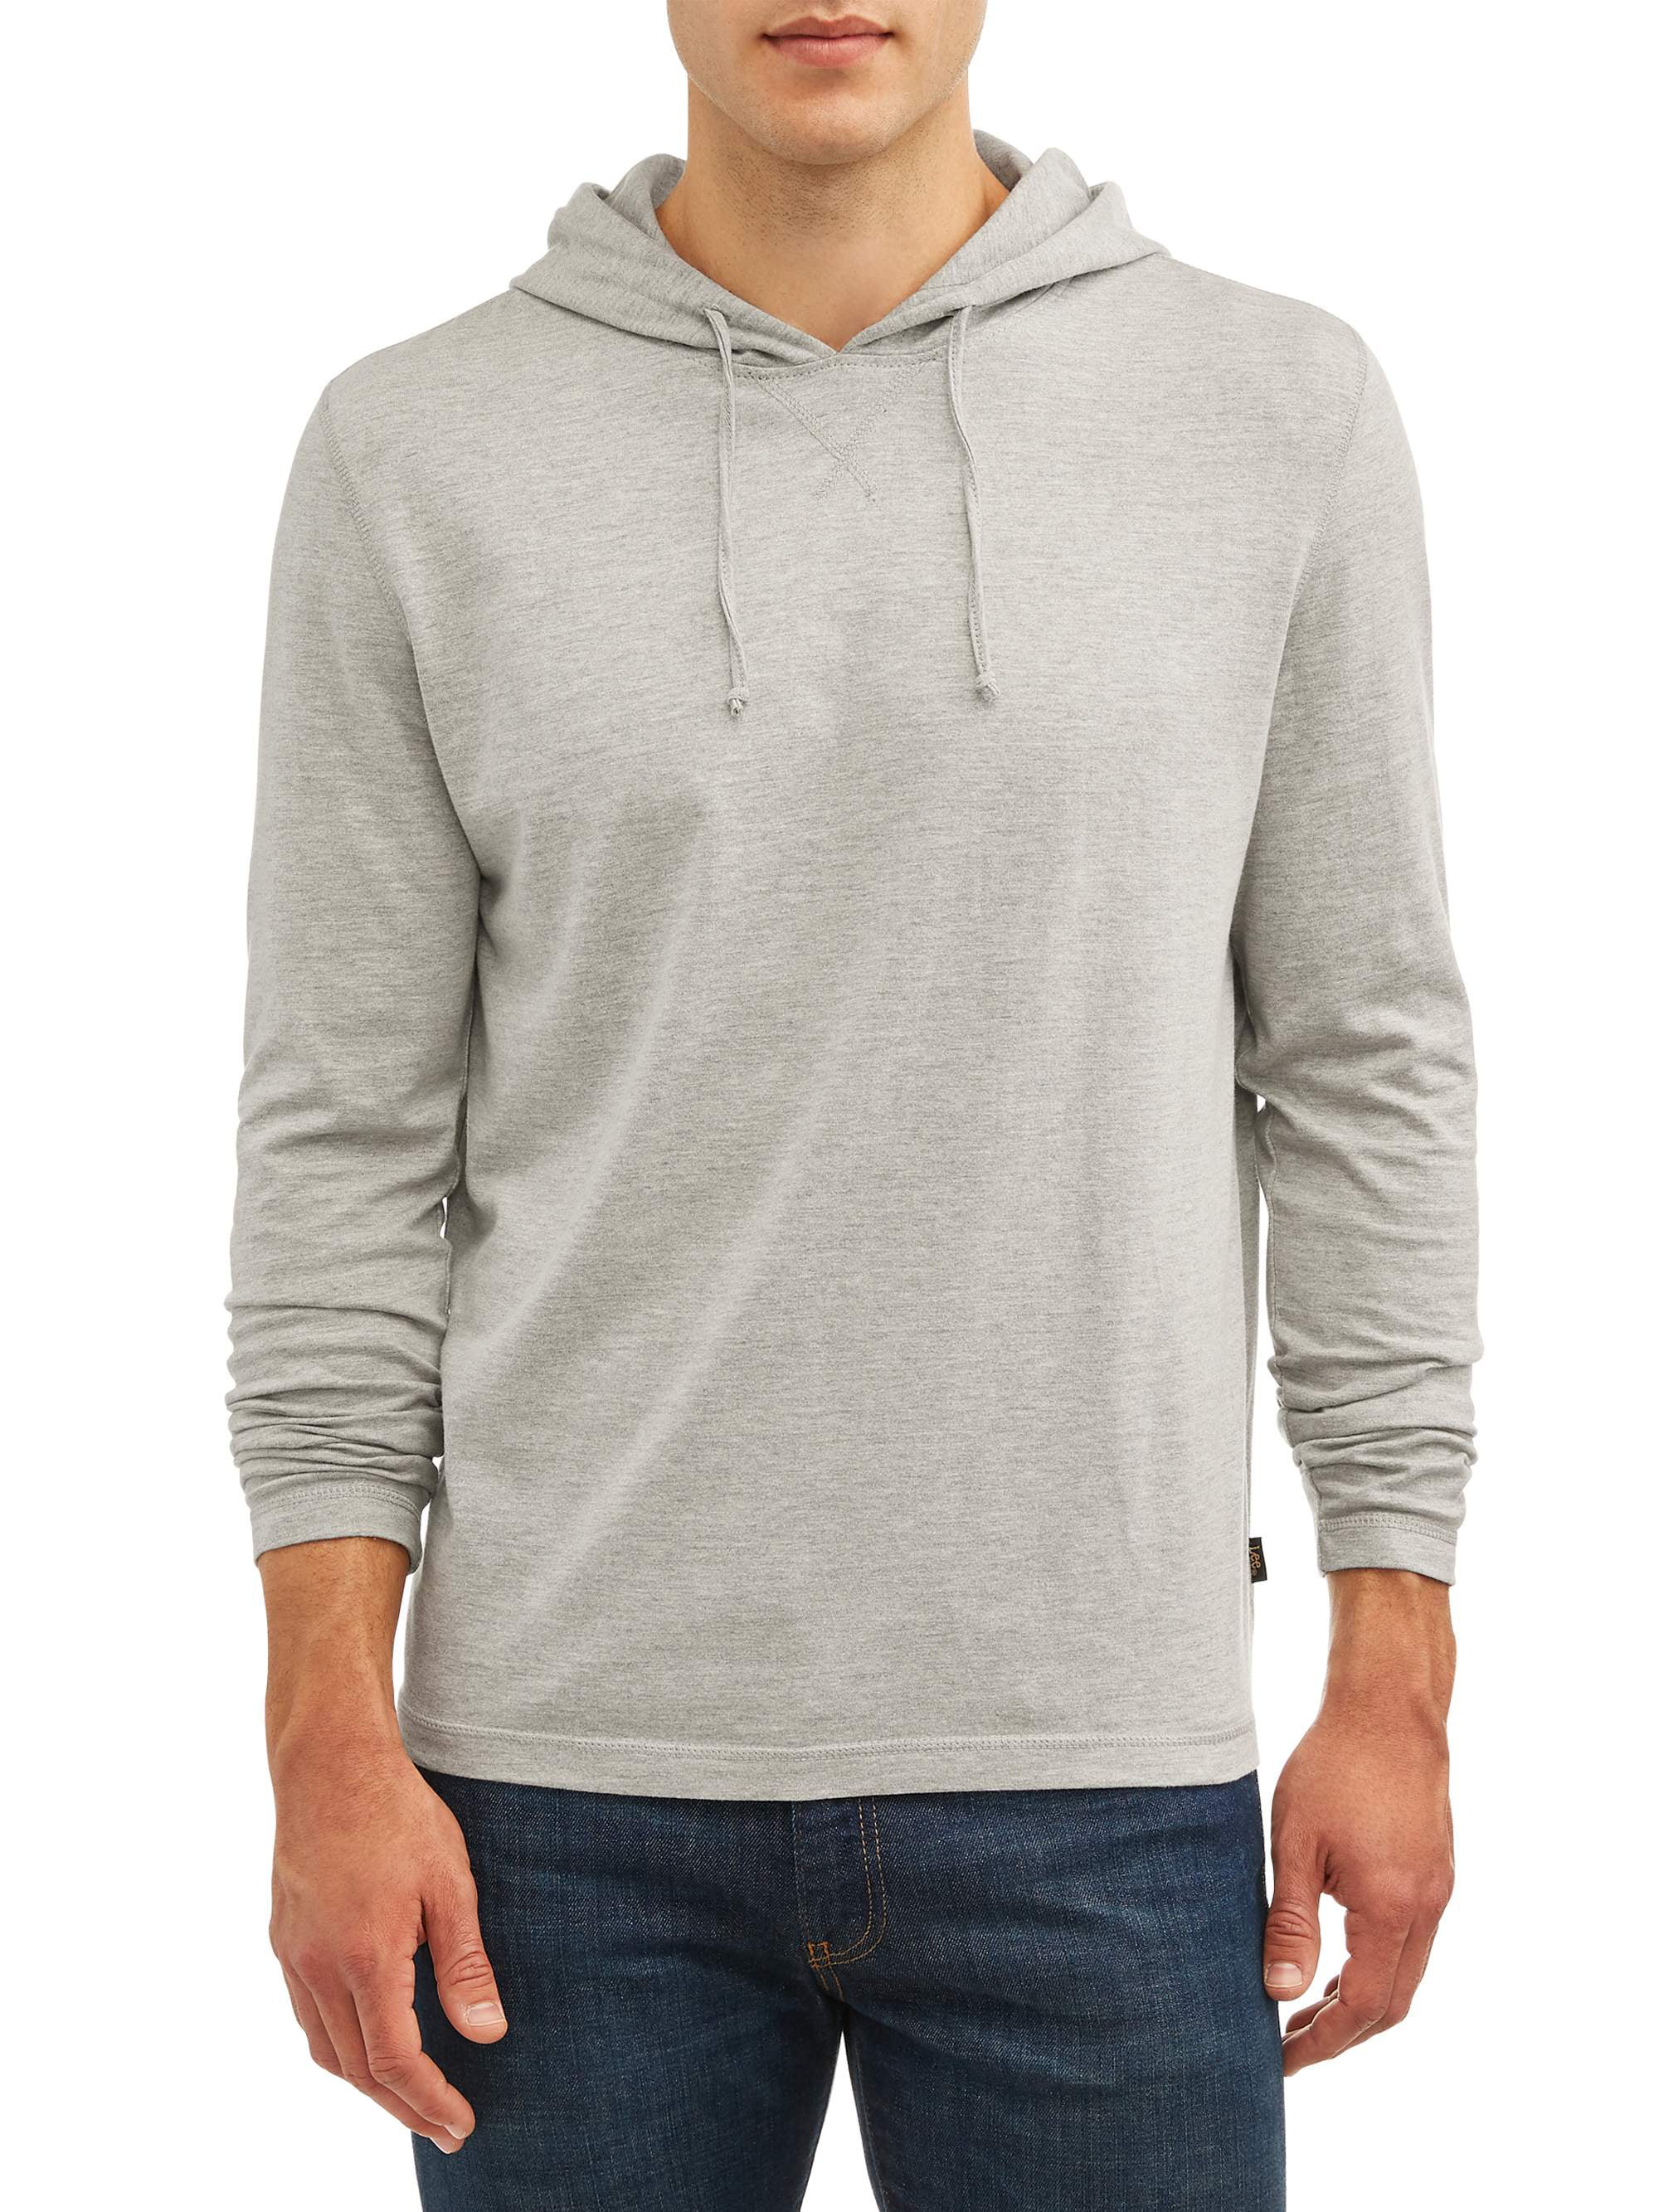 Lee Men's Long Sleeve Solid Jersey Hoodie - Walmart.com